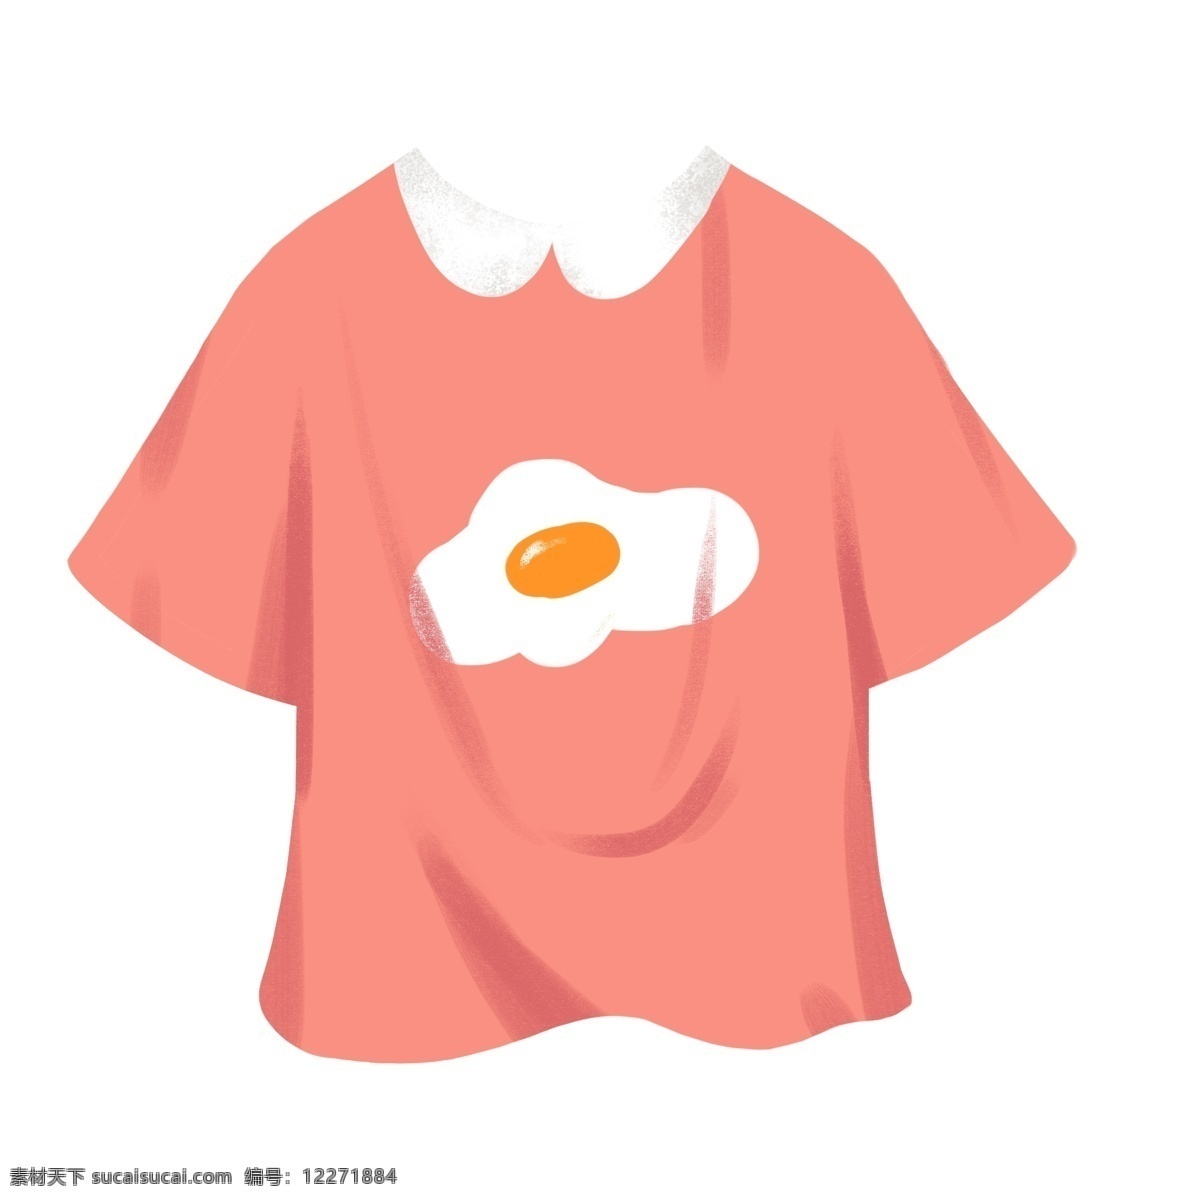 夏日 粉色 煎蛋 可爱 印花 短袖 生活 t恤 卡通 手绘 插画 装饰